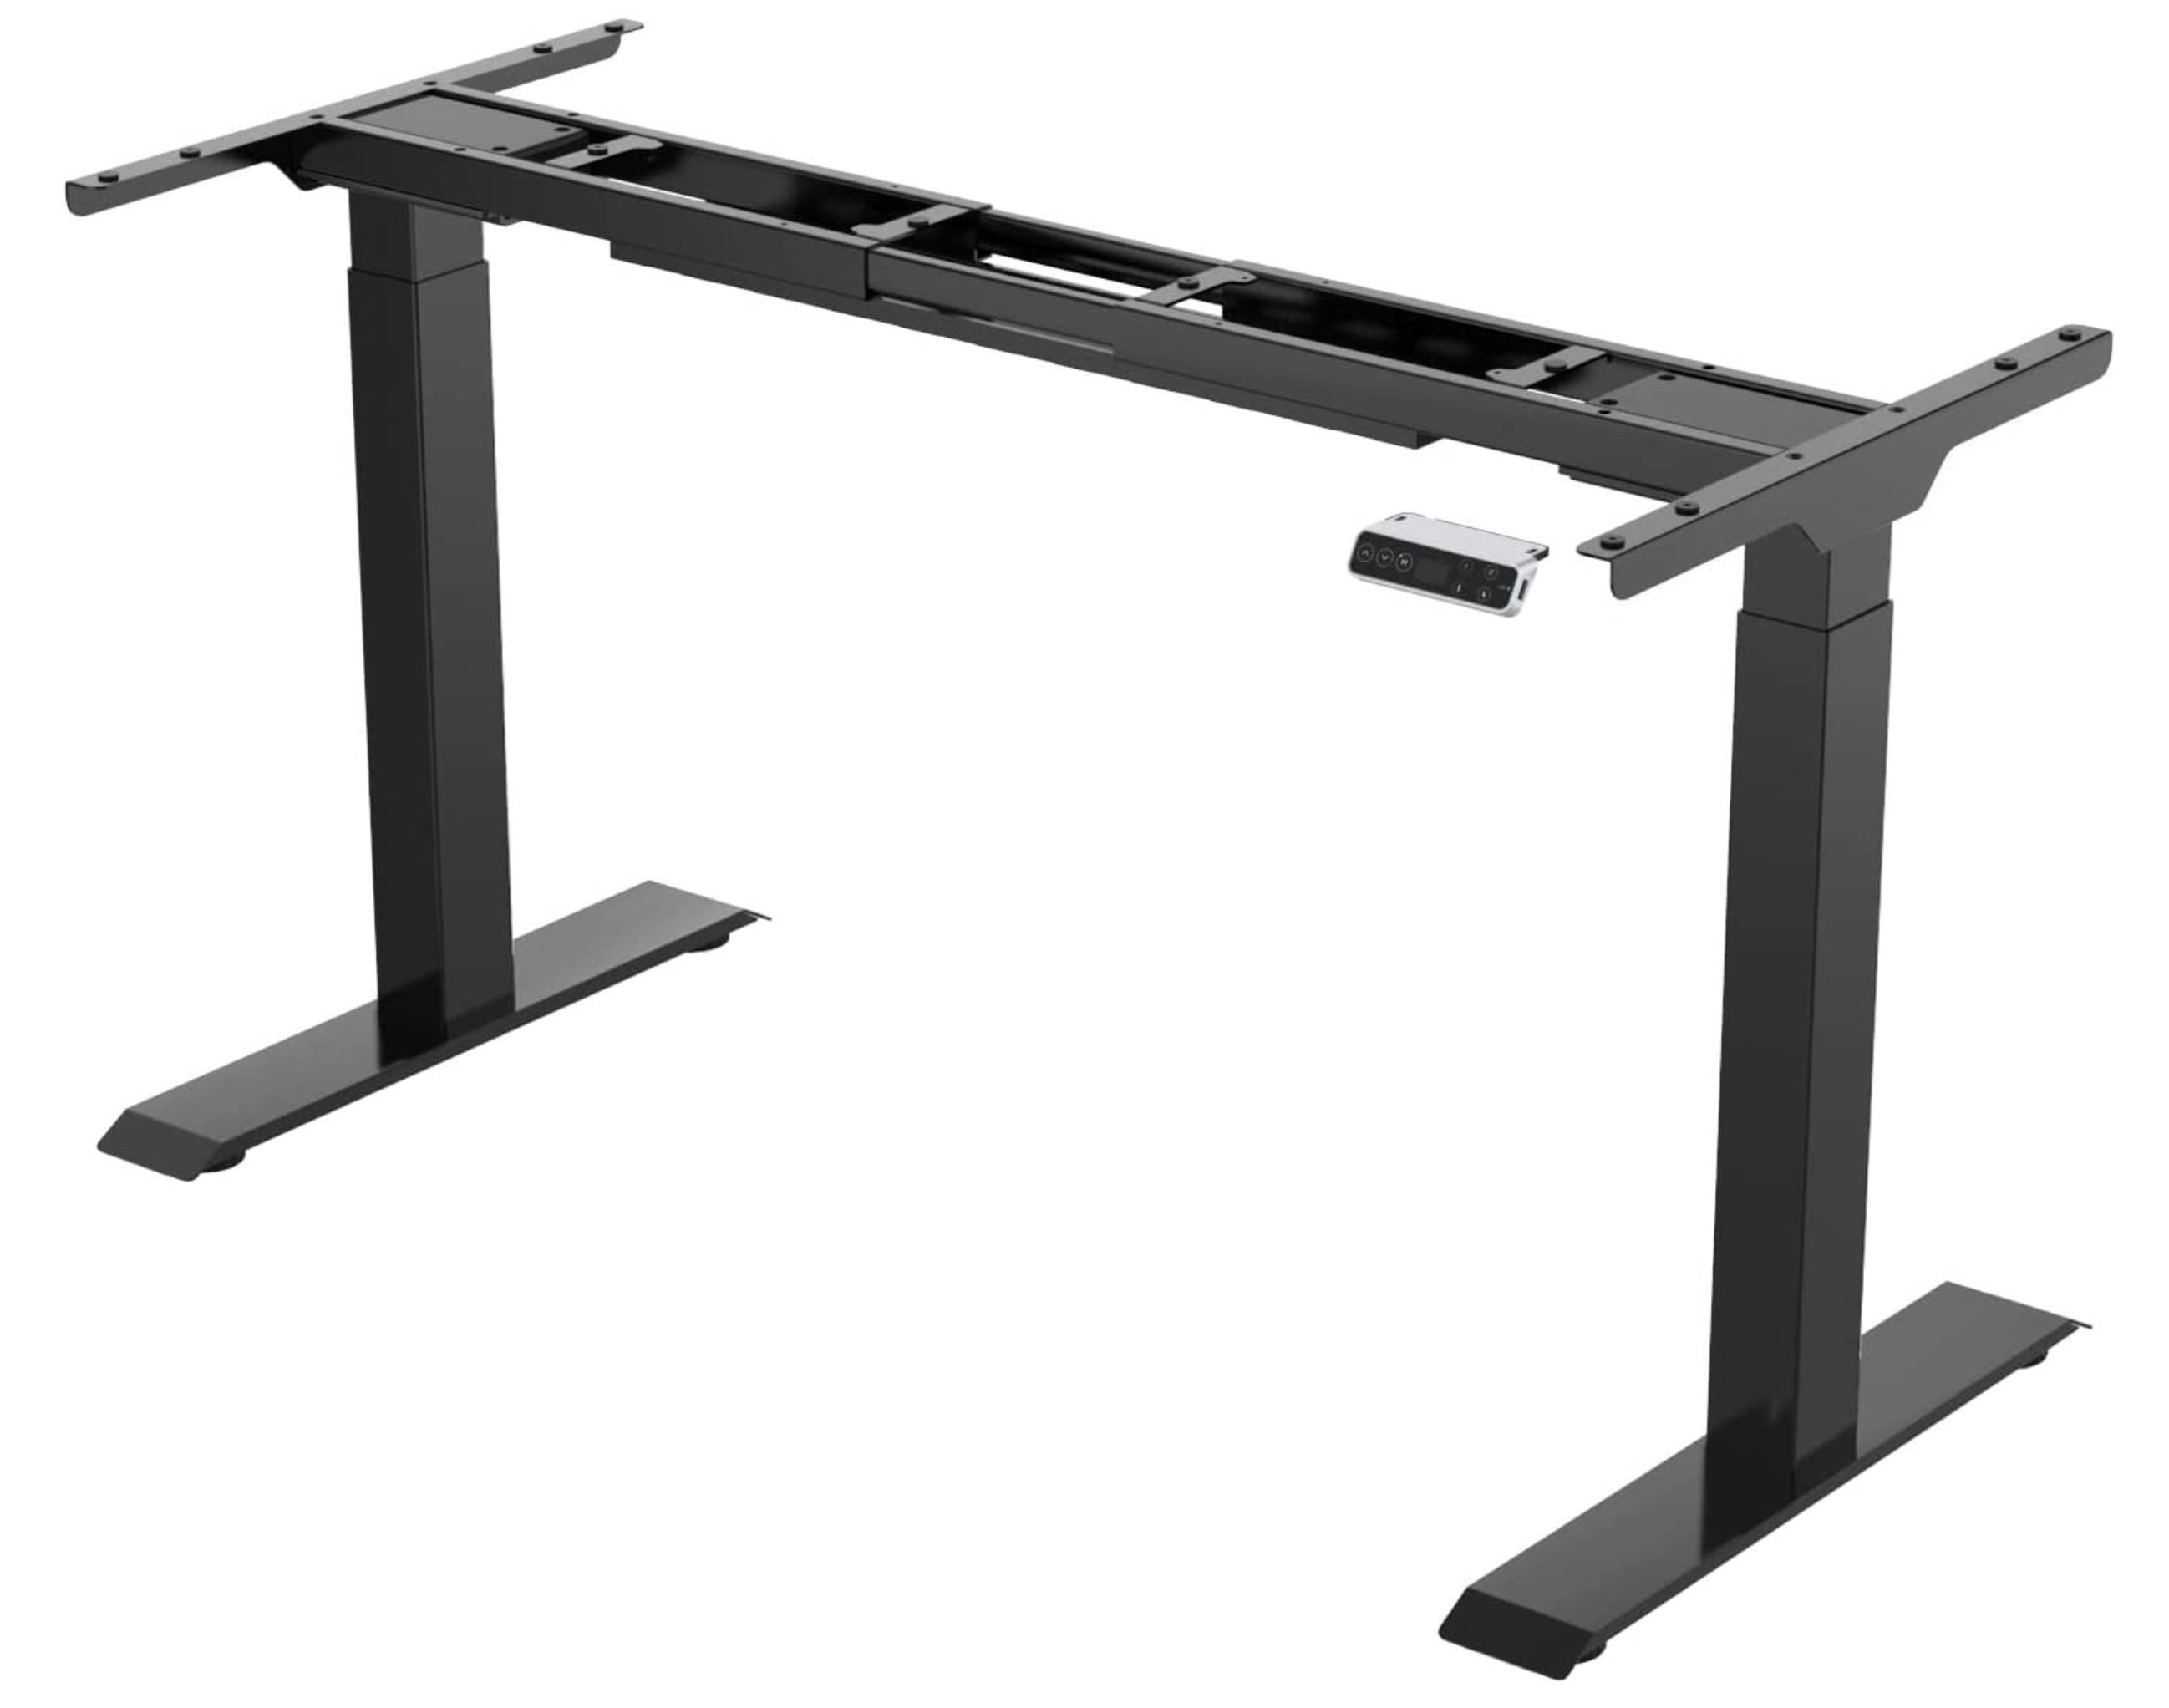 Sanodesk Basic Line stufenlos höhenverstellbarer Schreibtisch mit Kollisionschutz für 199,99€ (statt 270€)